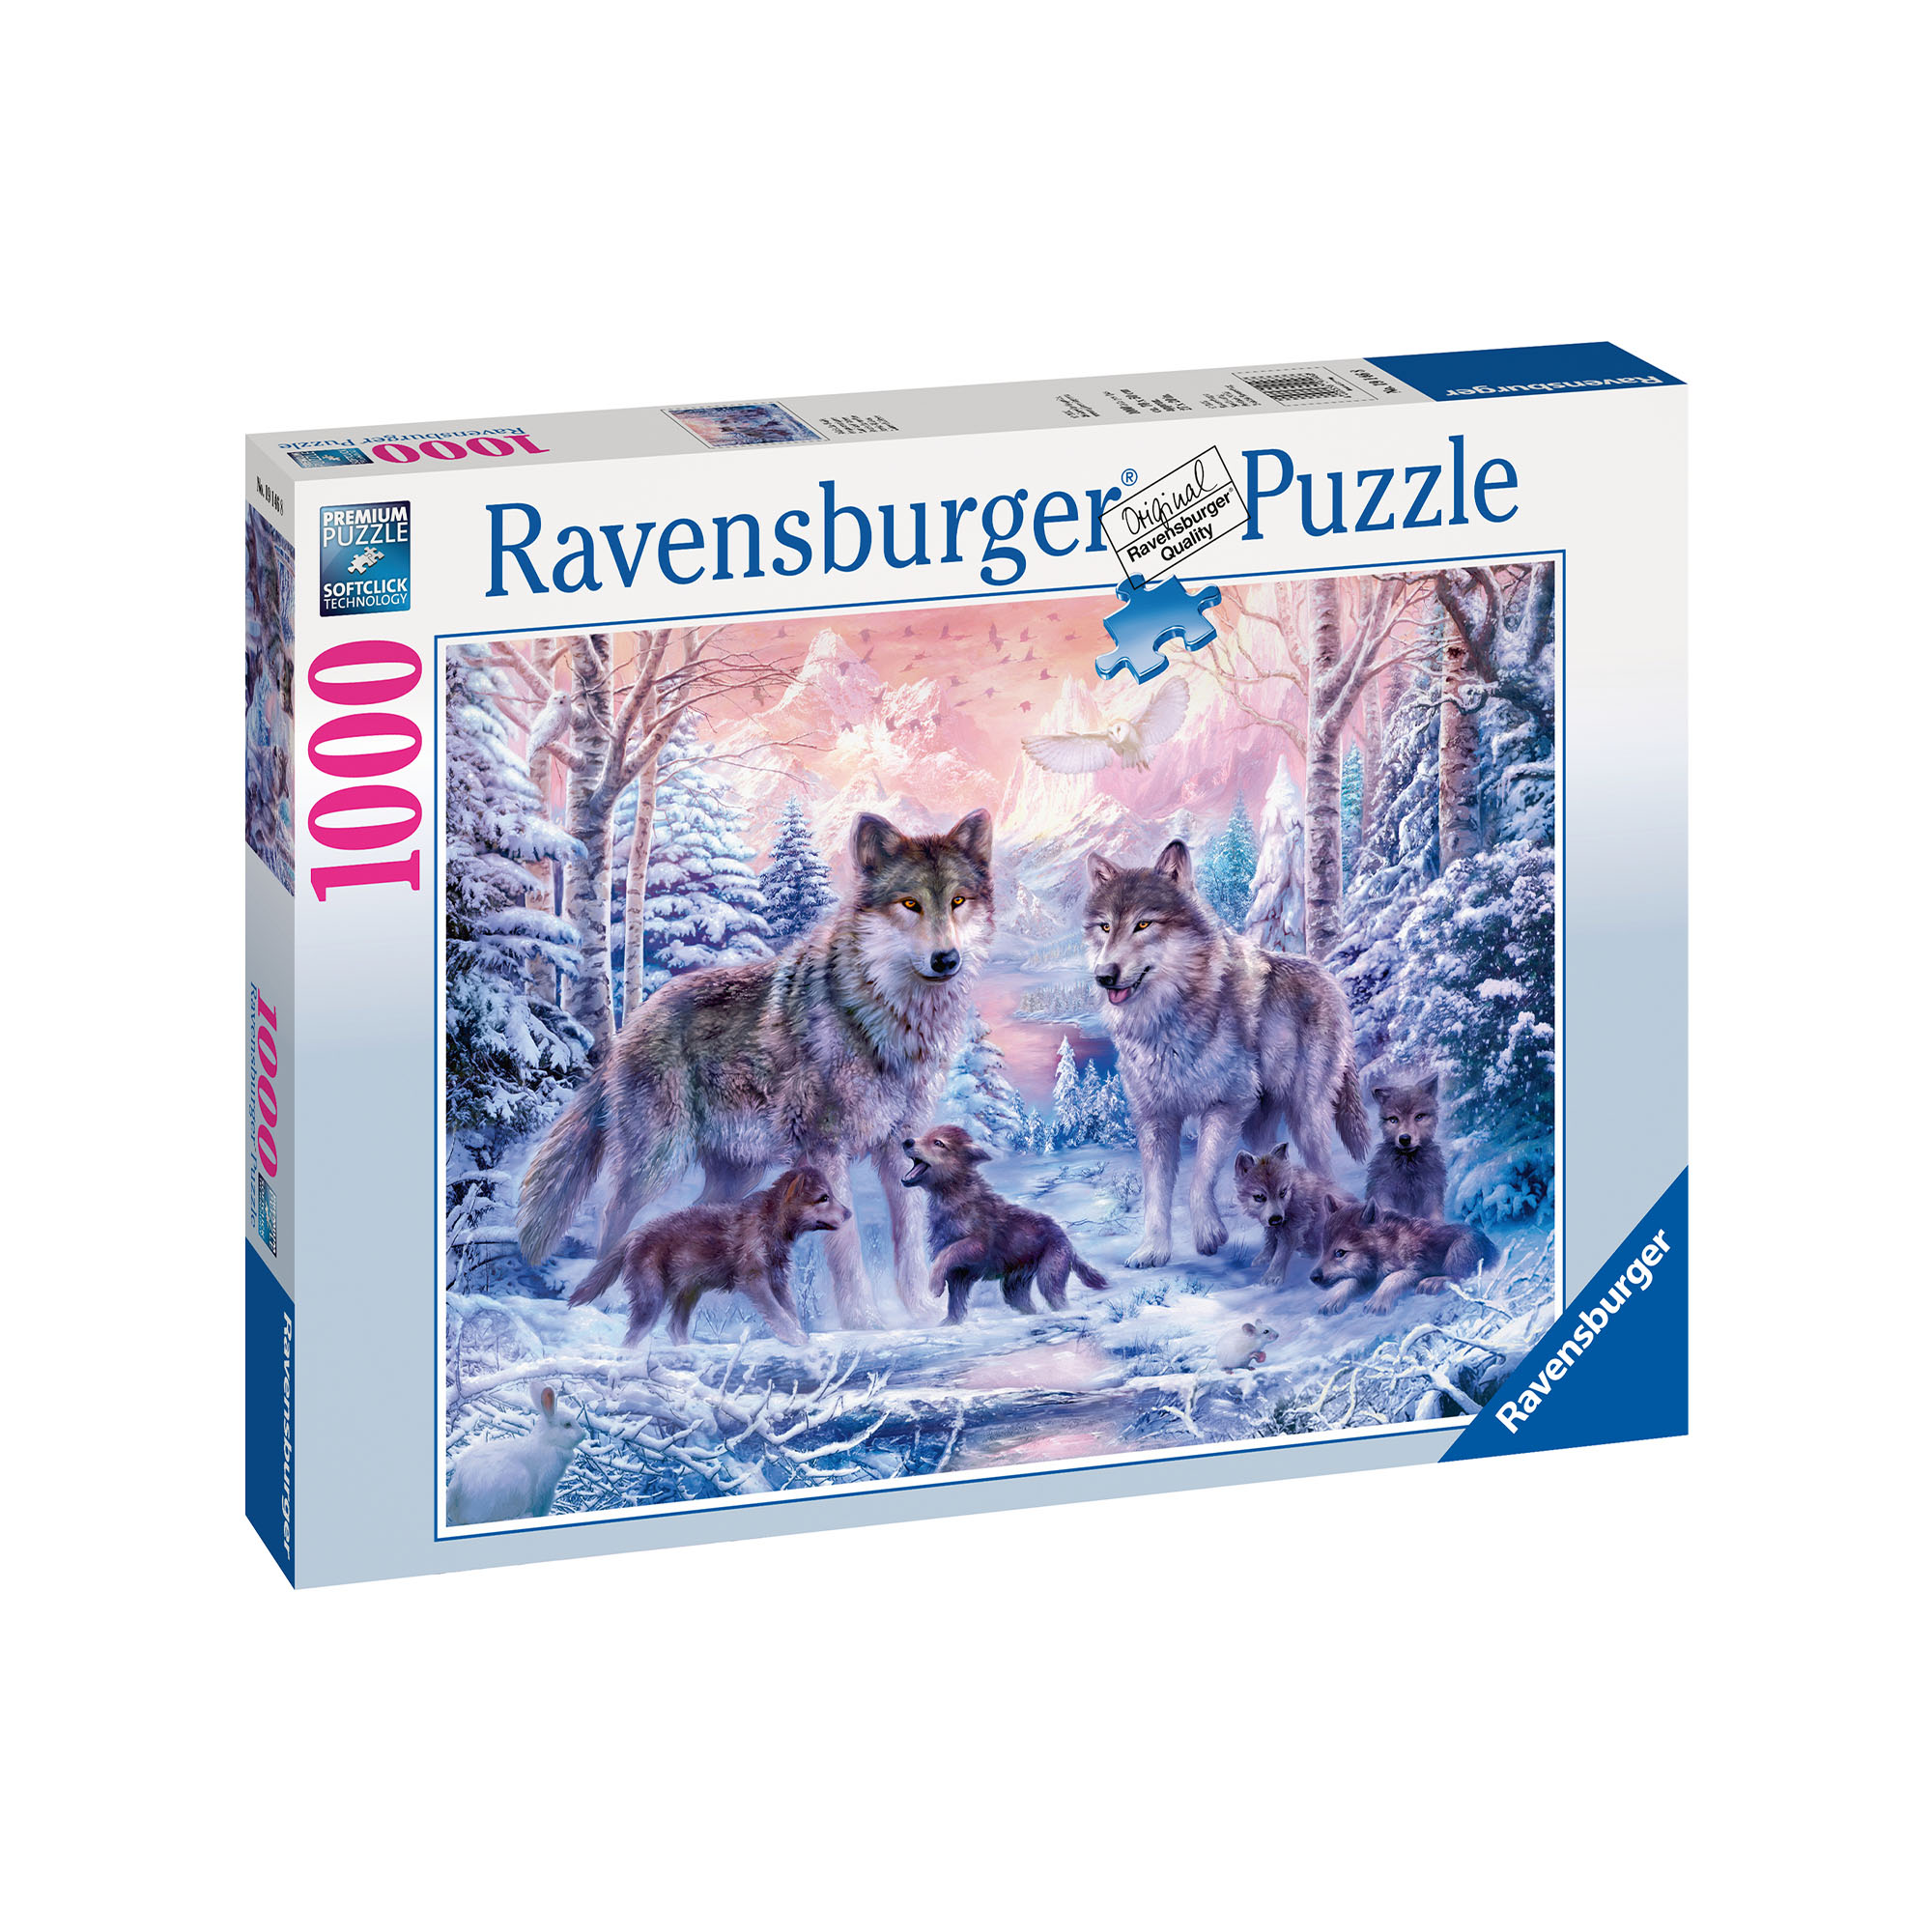 Ravensburger Puzzle 1000 pezzi 19146 - Lupi artici, , large